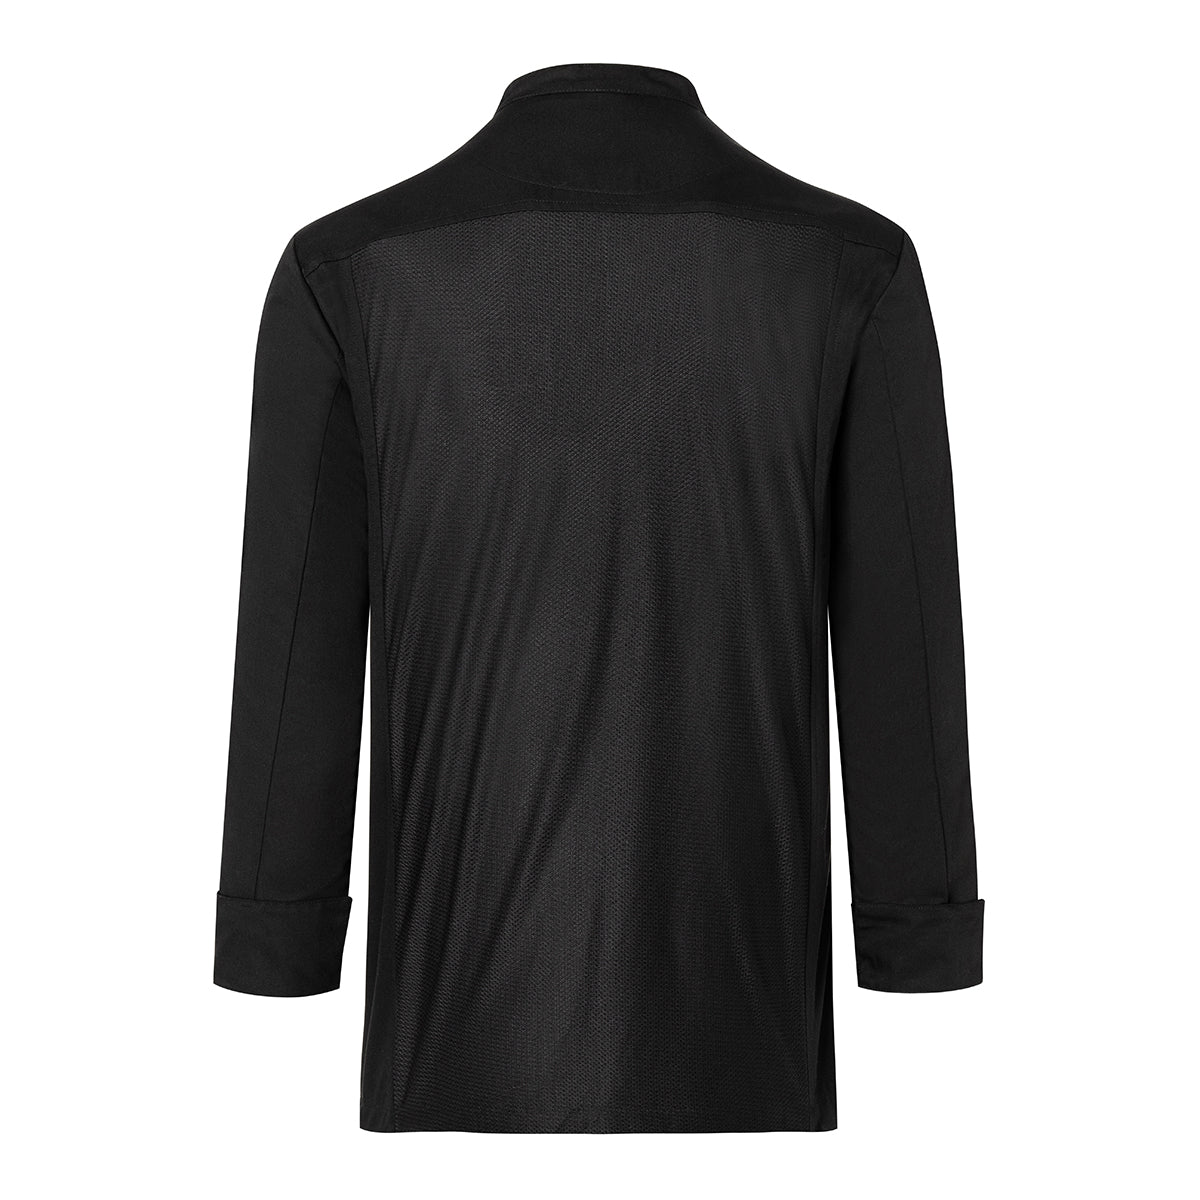 (6 stk) Karlowsky langermet skjorte - svart - str. S